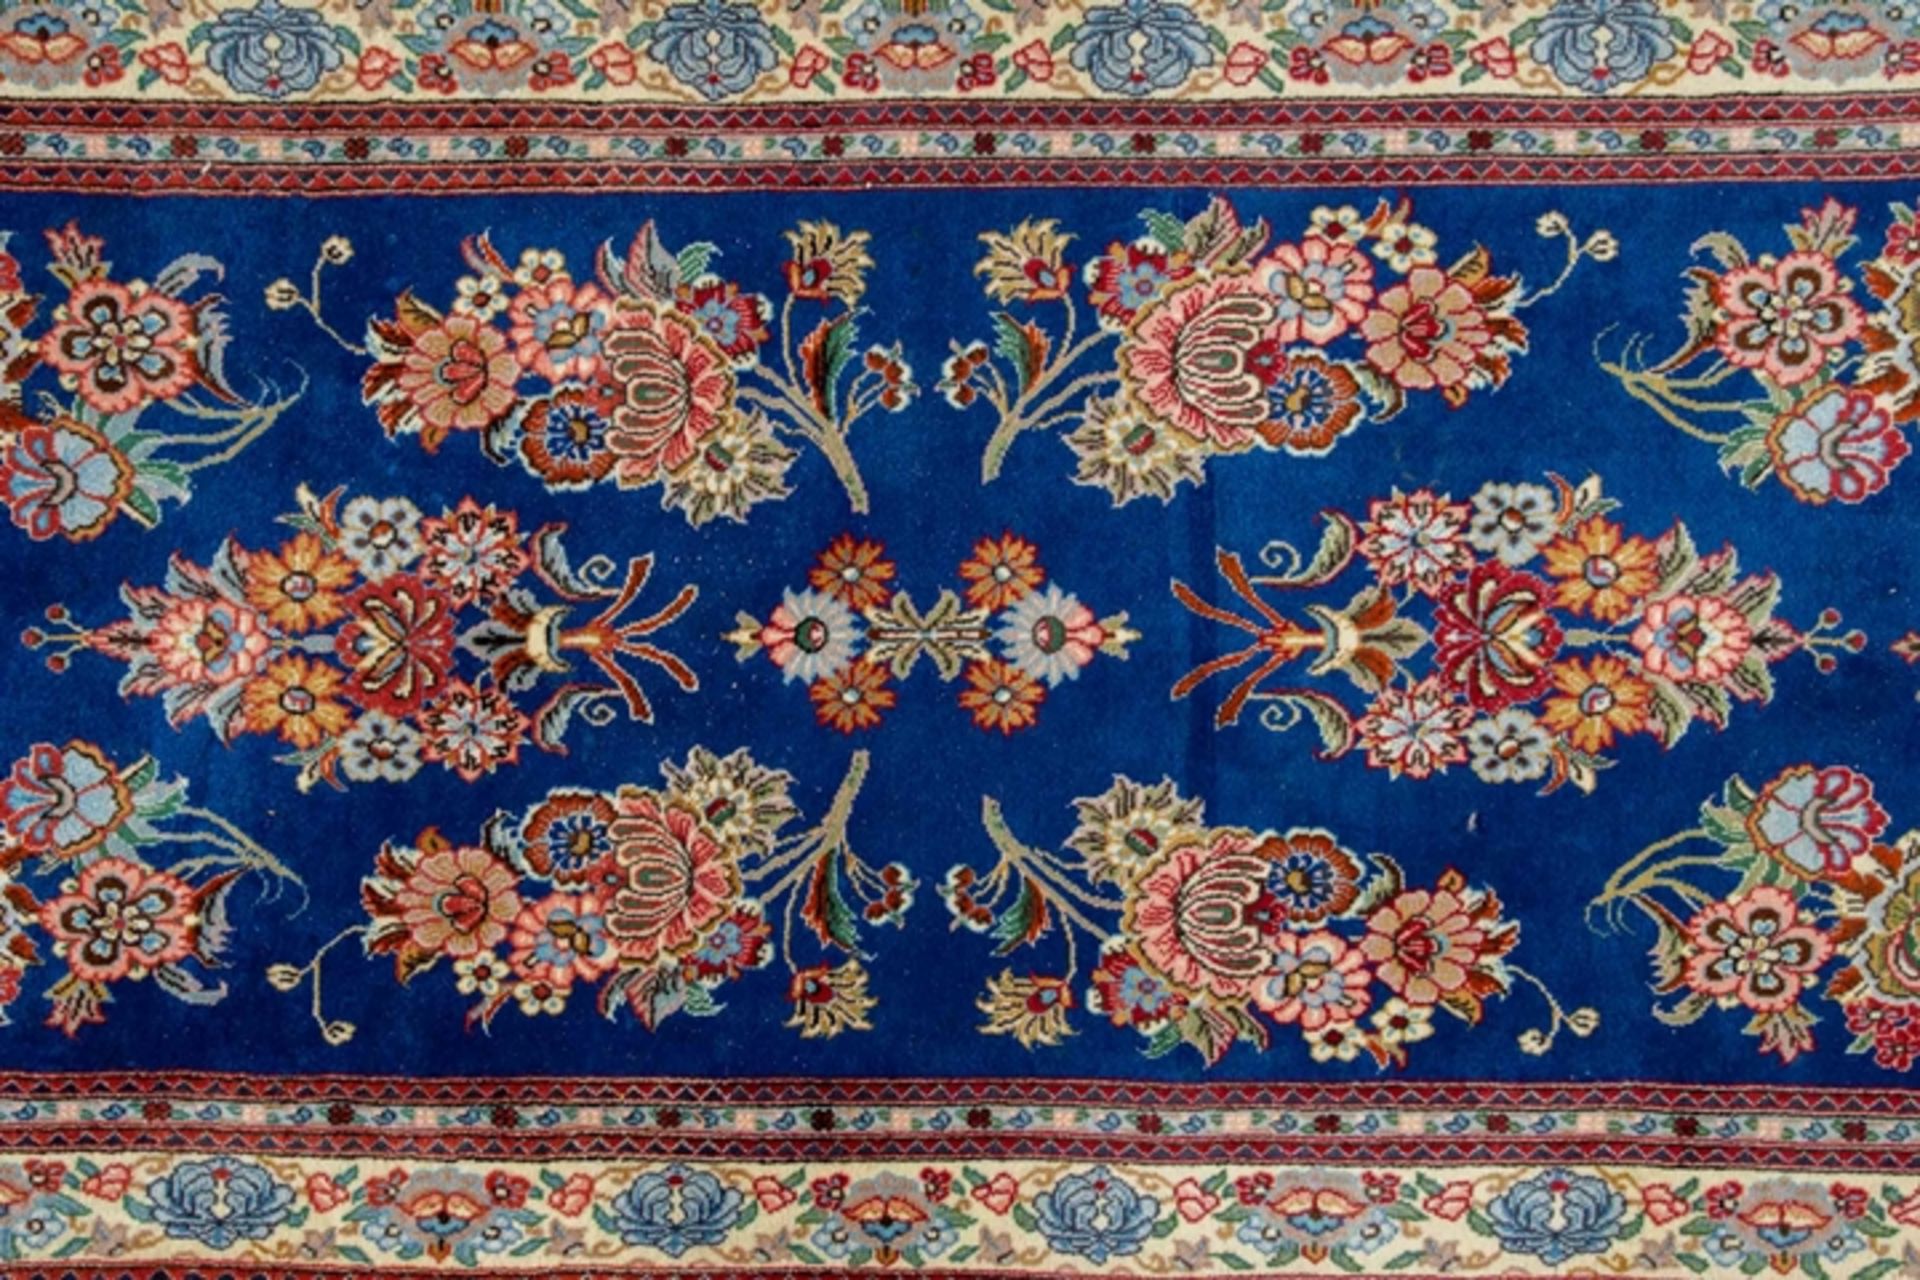 Blaugrundige Teppichgalerie, ca. 66 x 388 cm, schöne Farbigkeit, guter gebrauchter Erhalt. 20./21. - Image 2 of 7